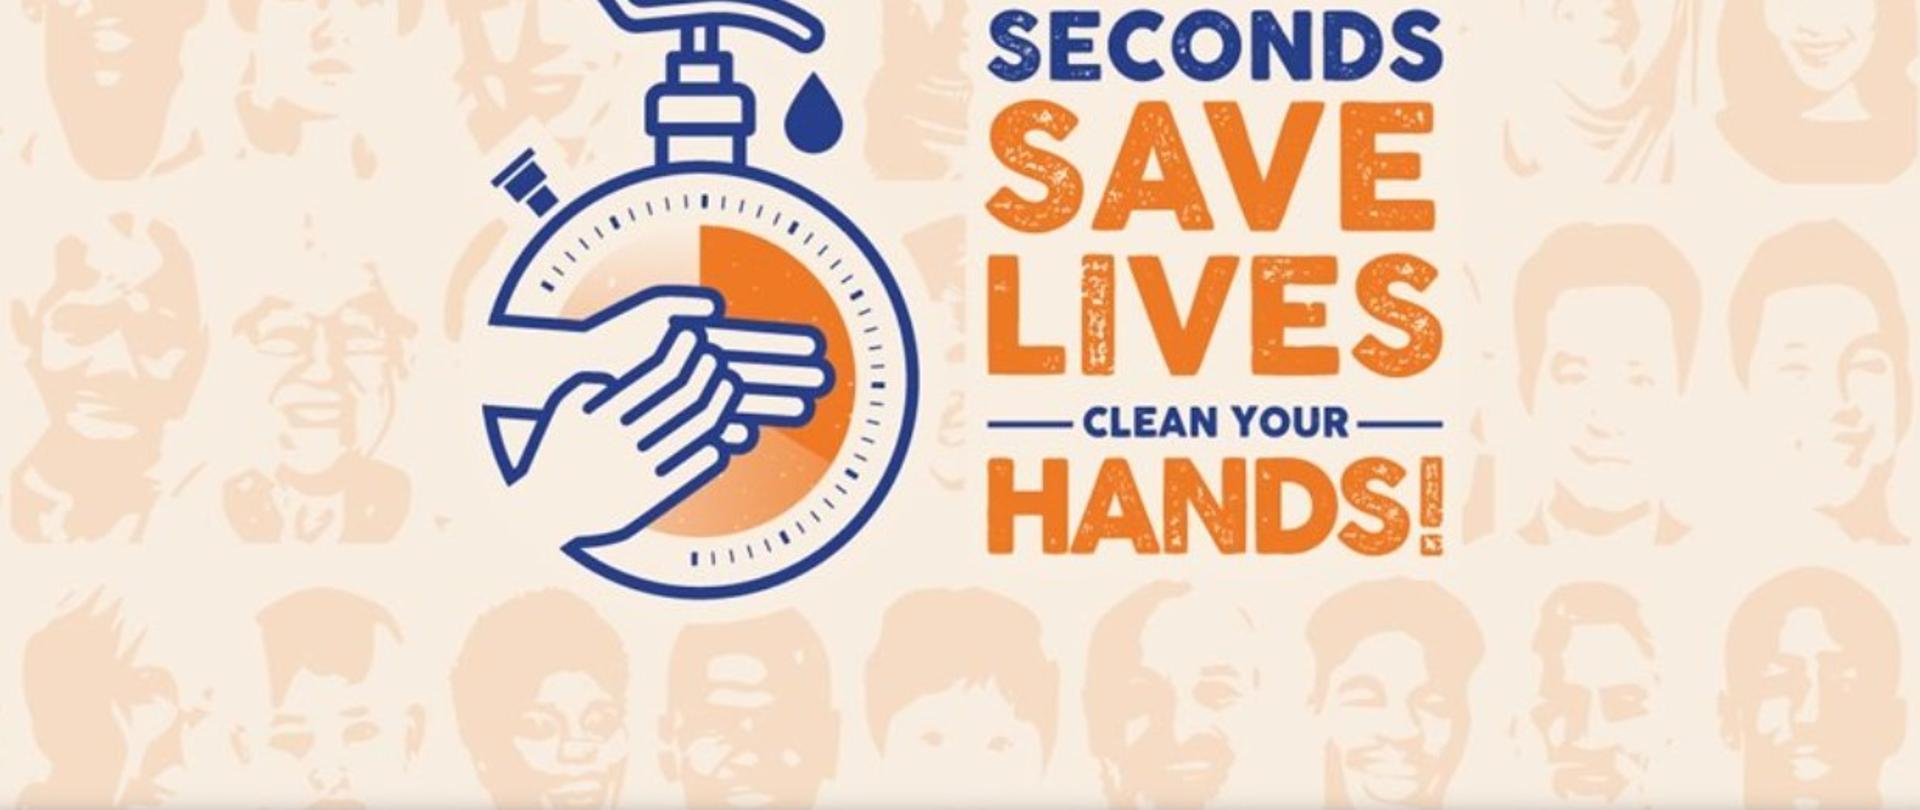 Napis w języku angielskim i polskim : Światowy Dzień Higieny Rąk 2021 - Sekundy ratują życie - umyj ręce! Infografika mydło w płynie na którym są wskazówki zegara i ręce